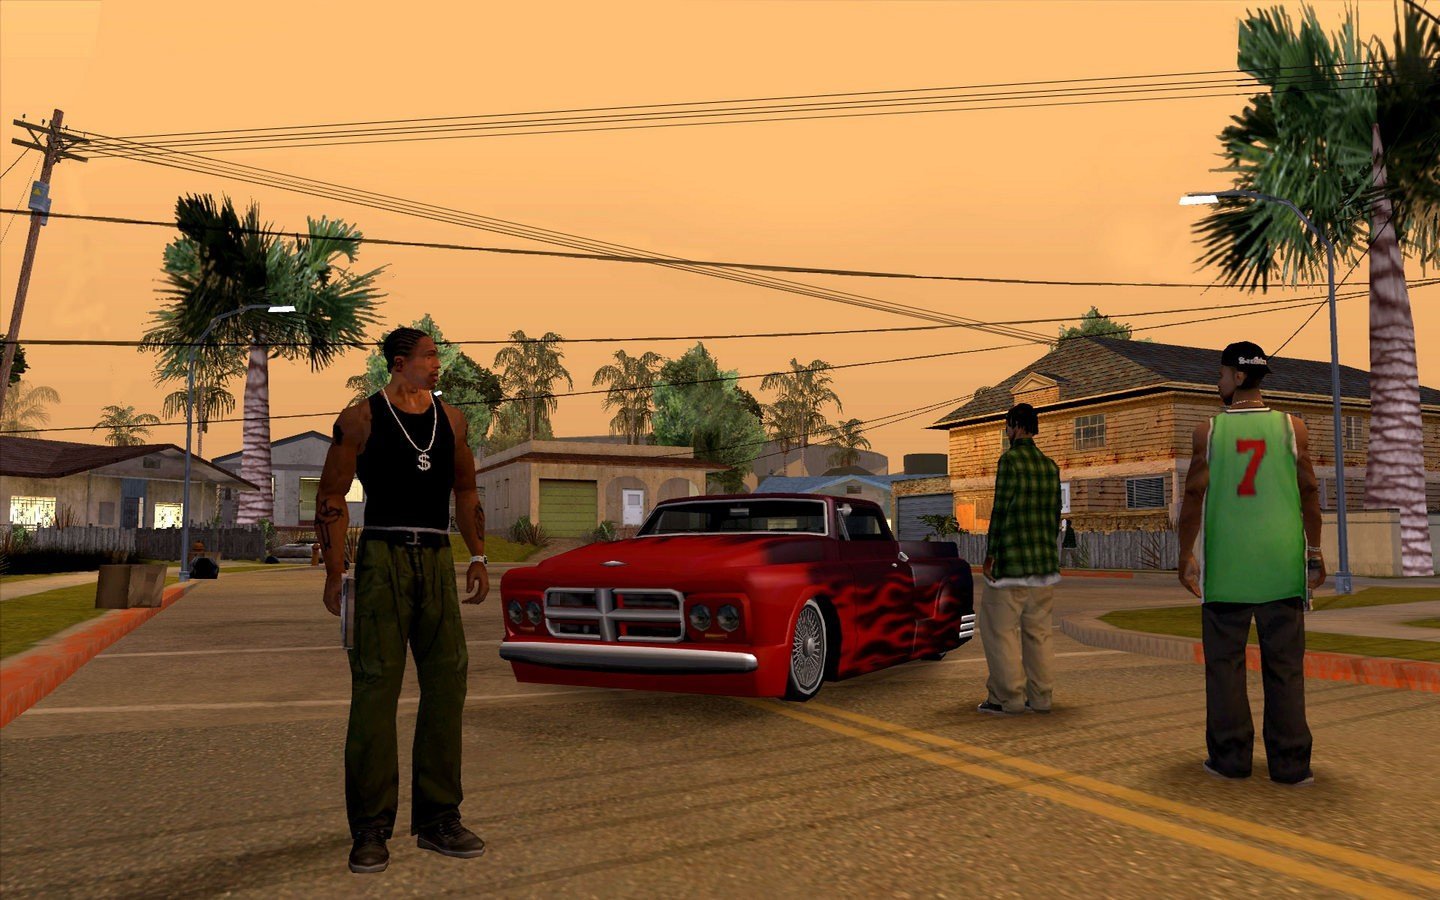 Коды на GTA San Andreas: оружие, транспорт и многое другое